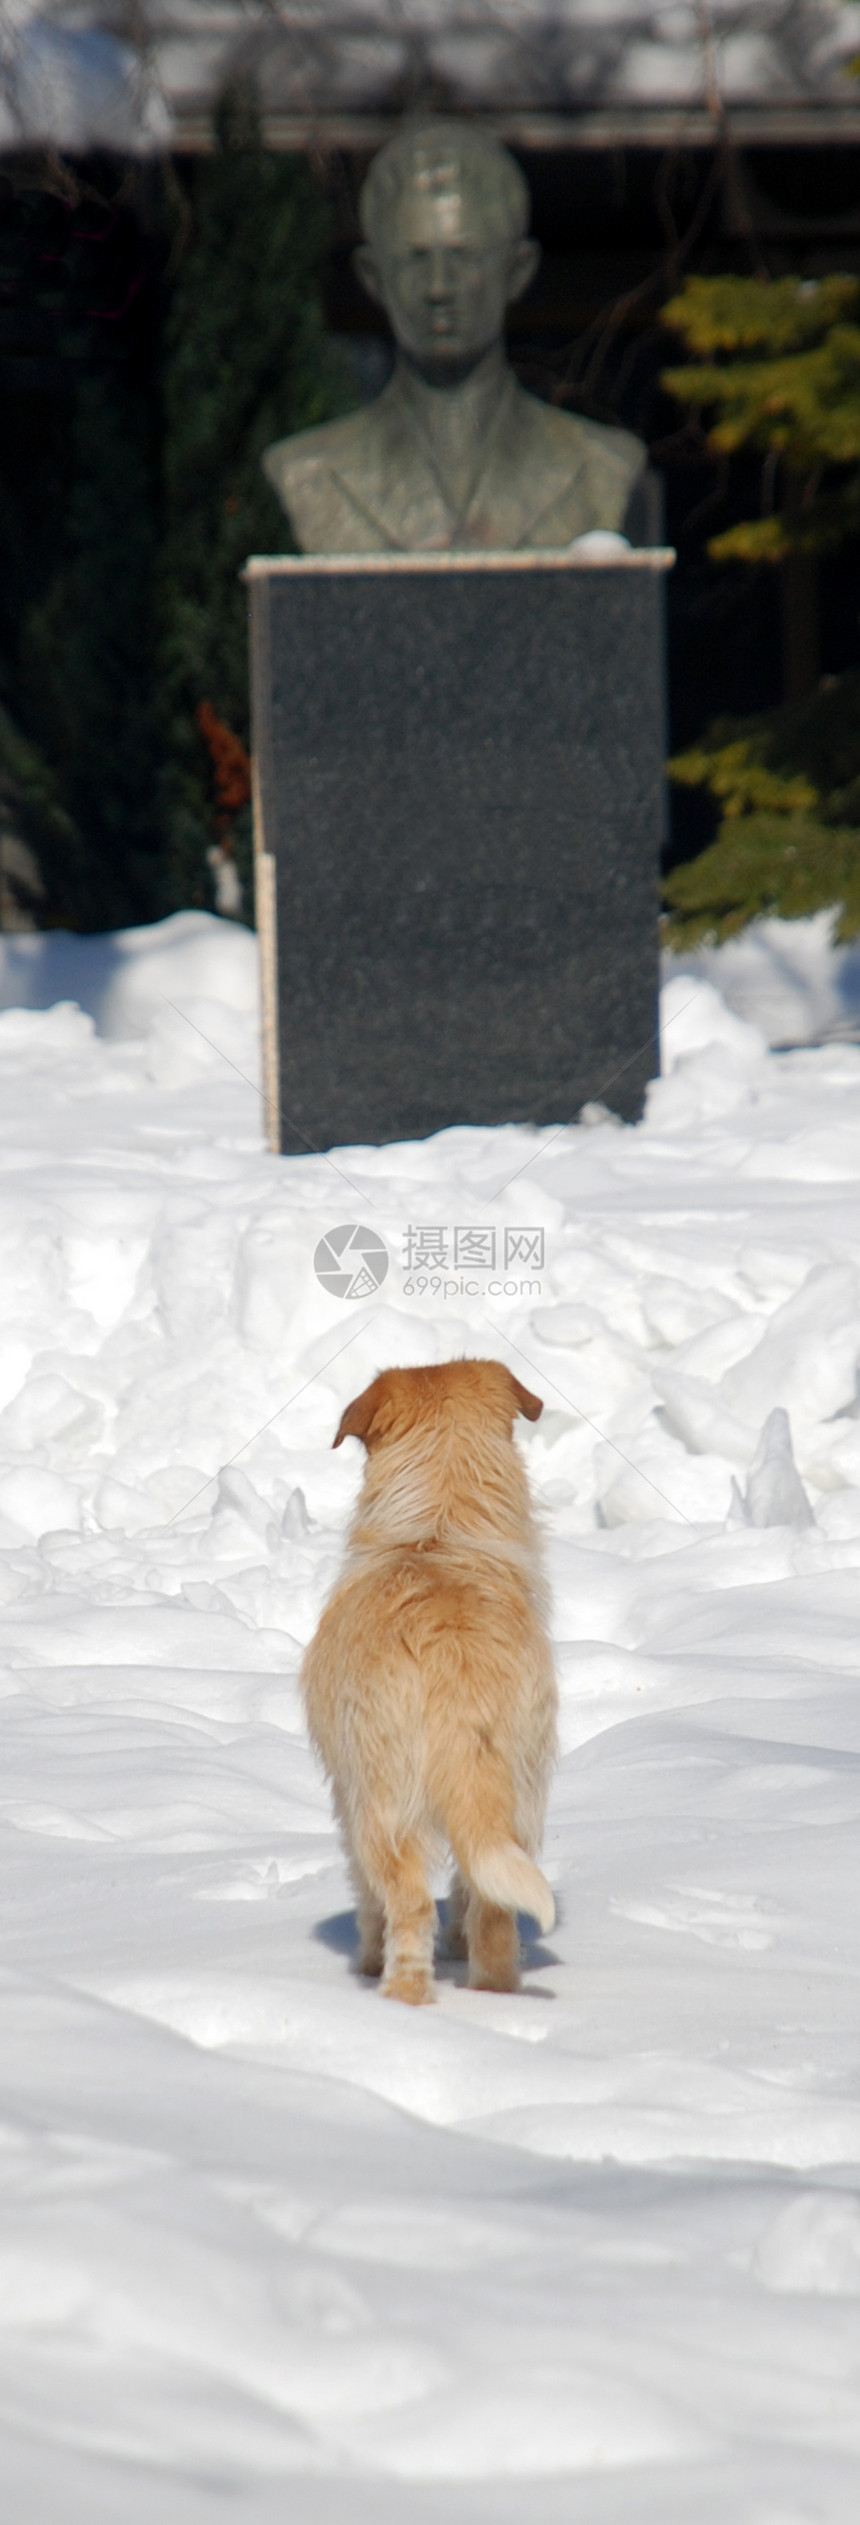 狗狗在看纪念碑图片